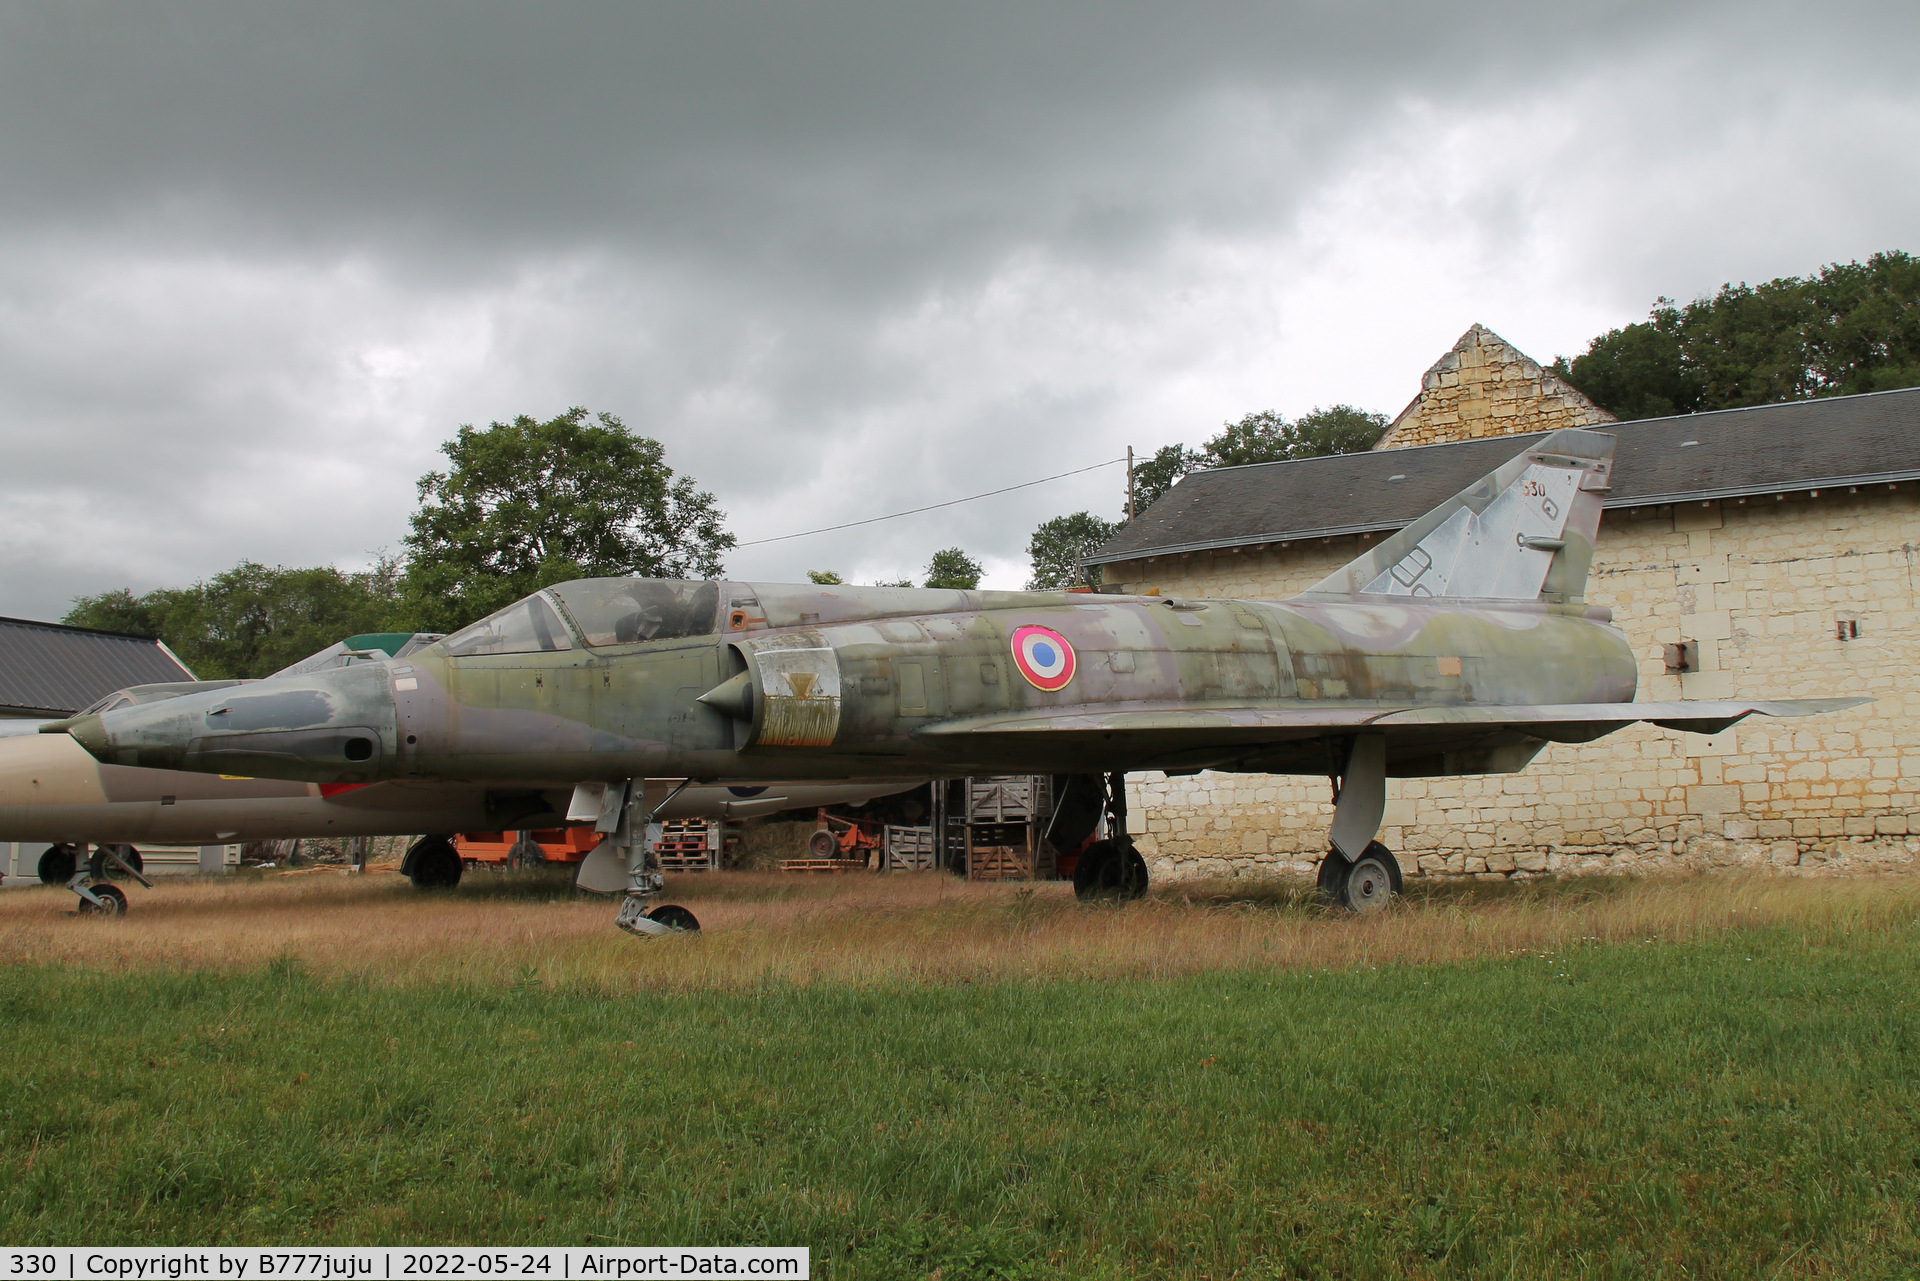 330, Dassault Mirage IIIR C/N 330, at La Tourette, Saix